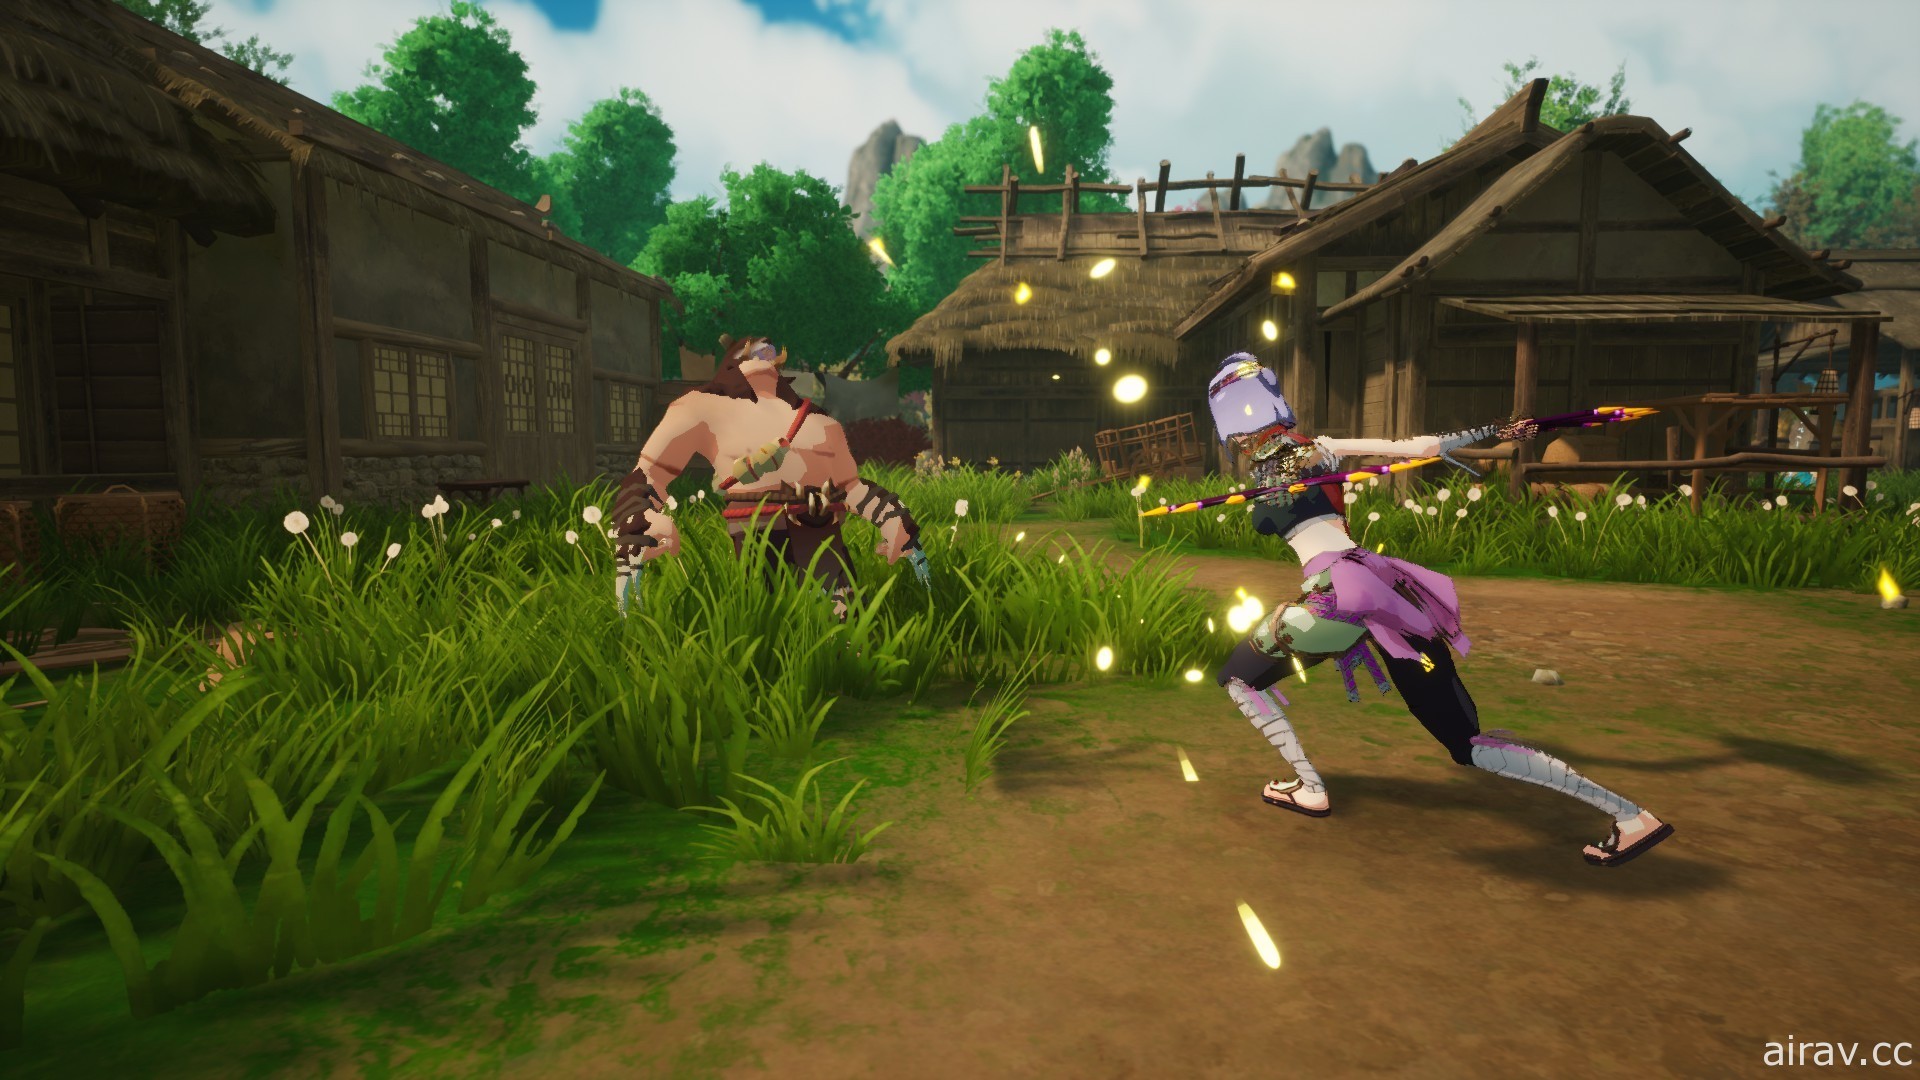 《遊靈》11 月更新新增 2 個可遊玩角色「飛扇姬、神箭手」